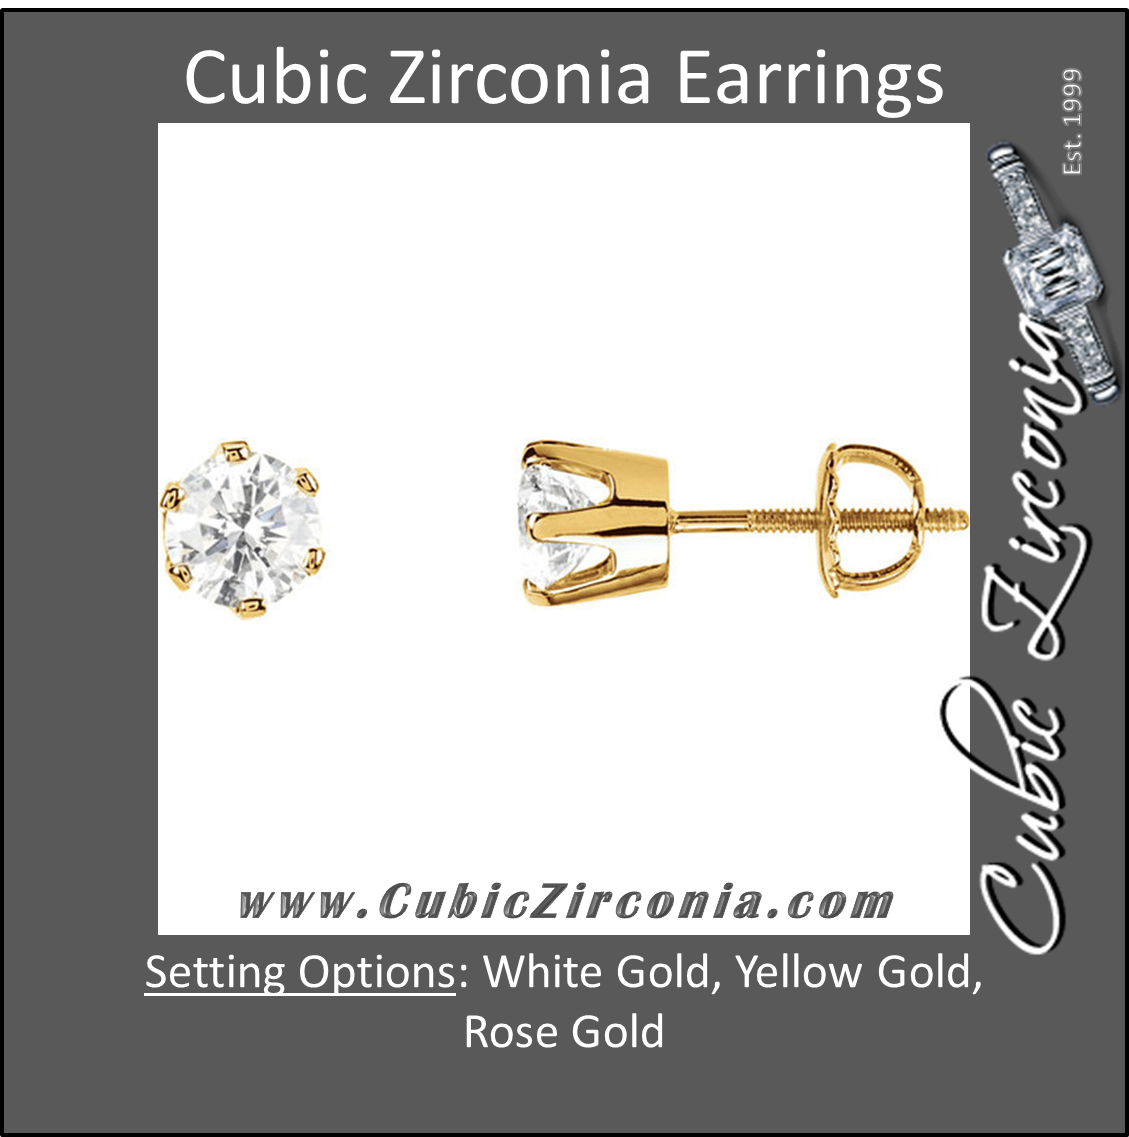 Cubic Zirconia Earrings- 1.0 Carat CZ 6-Prong Screw Back Stud Earring Set